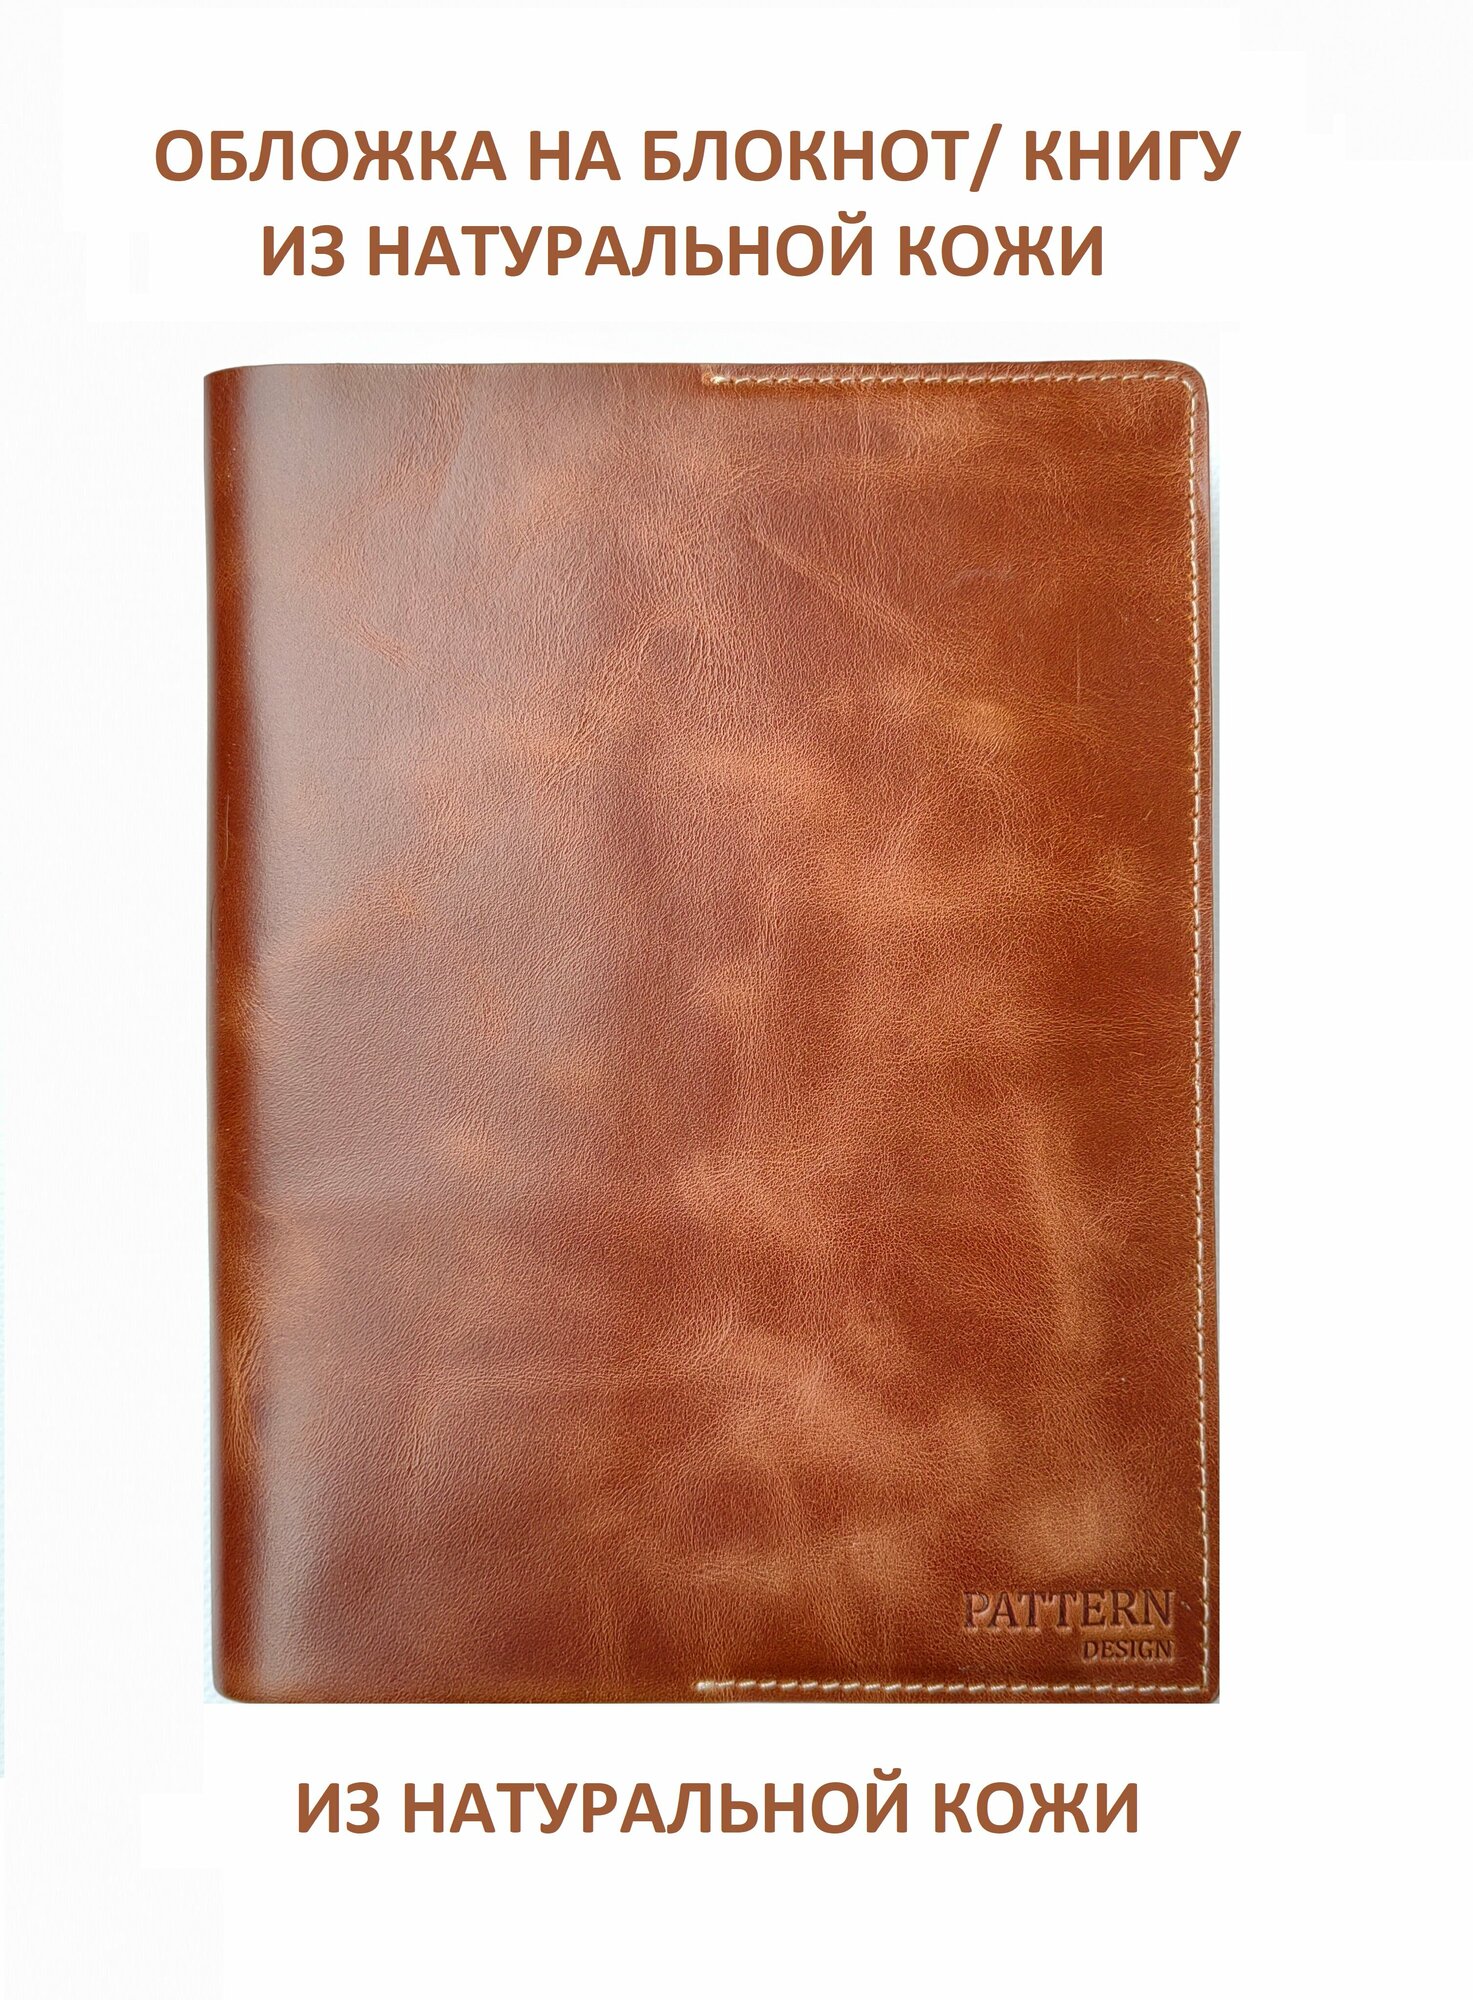 Обложка Pattern для книг и ежедневников из натуральной кожи, коньячный цвет, формат А5, арт.057